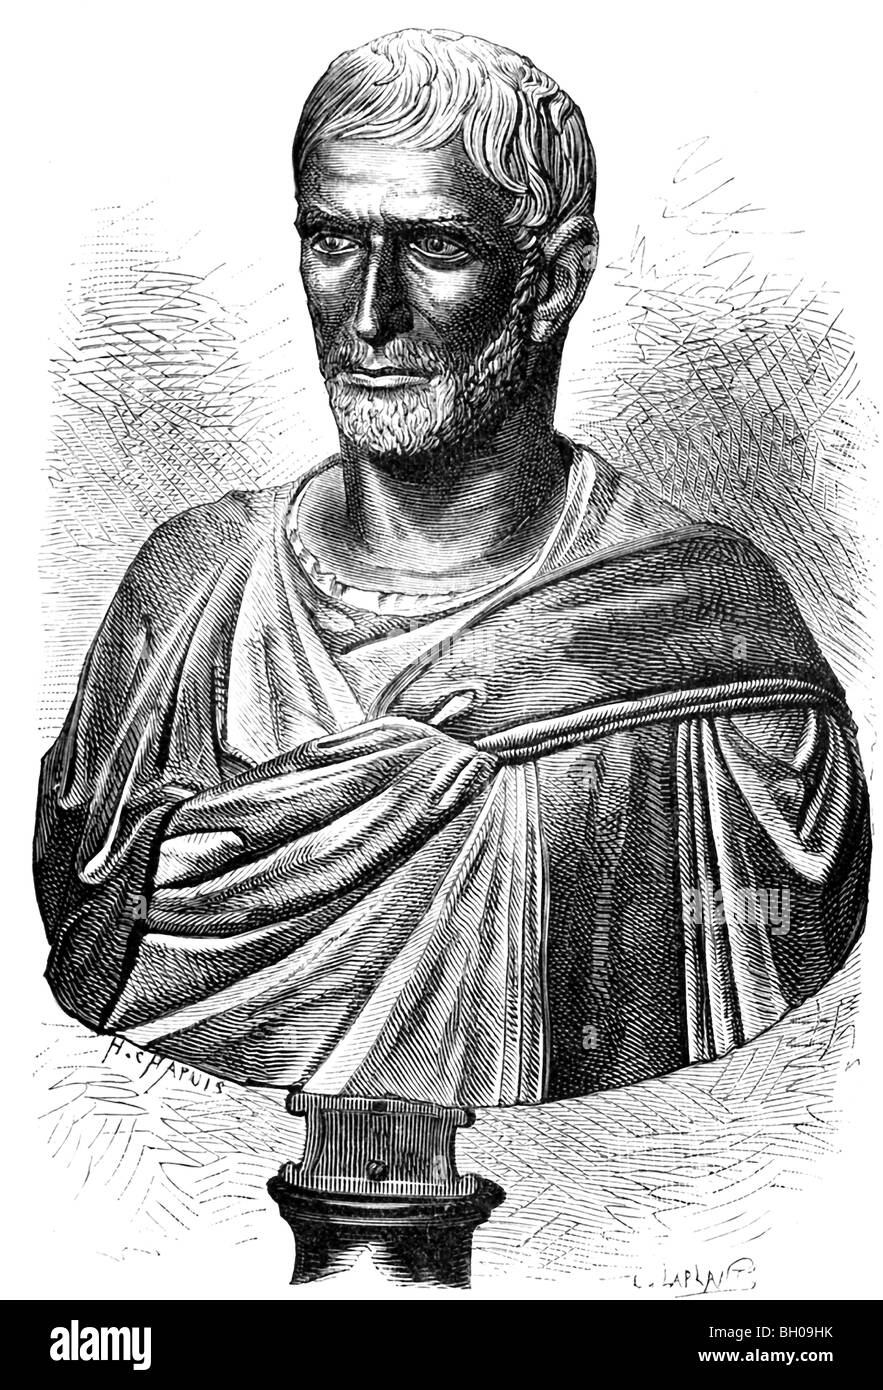 Repubblica romana immagini e fotografie stock ad alta risoluzione - Alamy